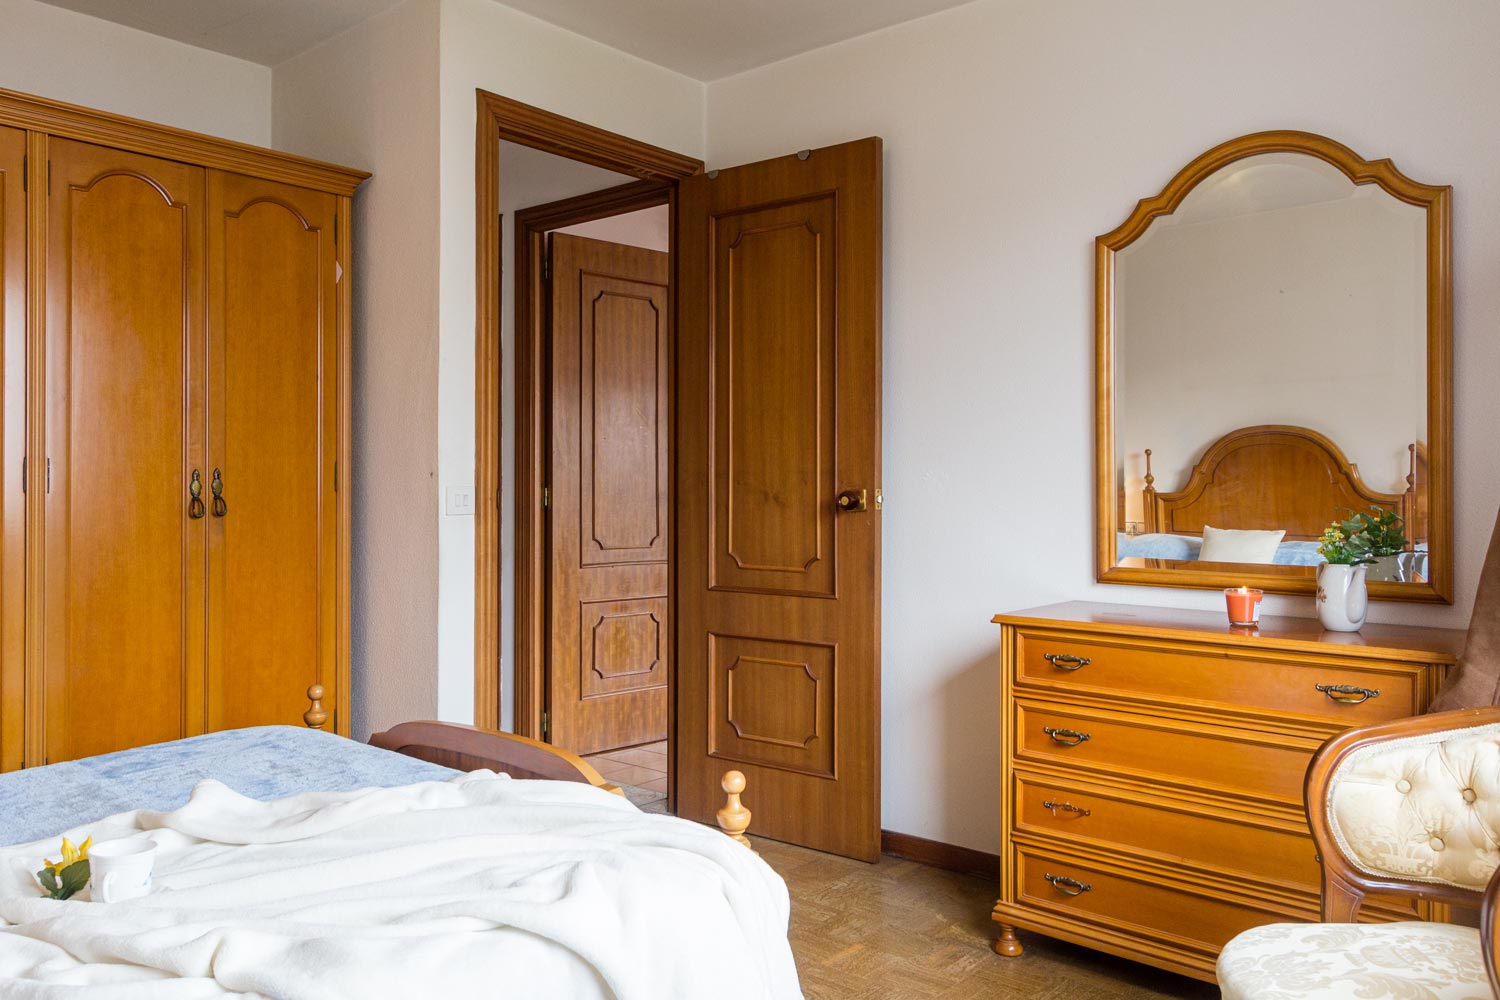 Detalle de la cómoda con espejo y el armario del dormitorio